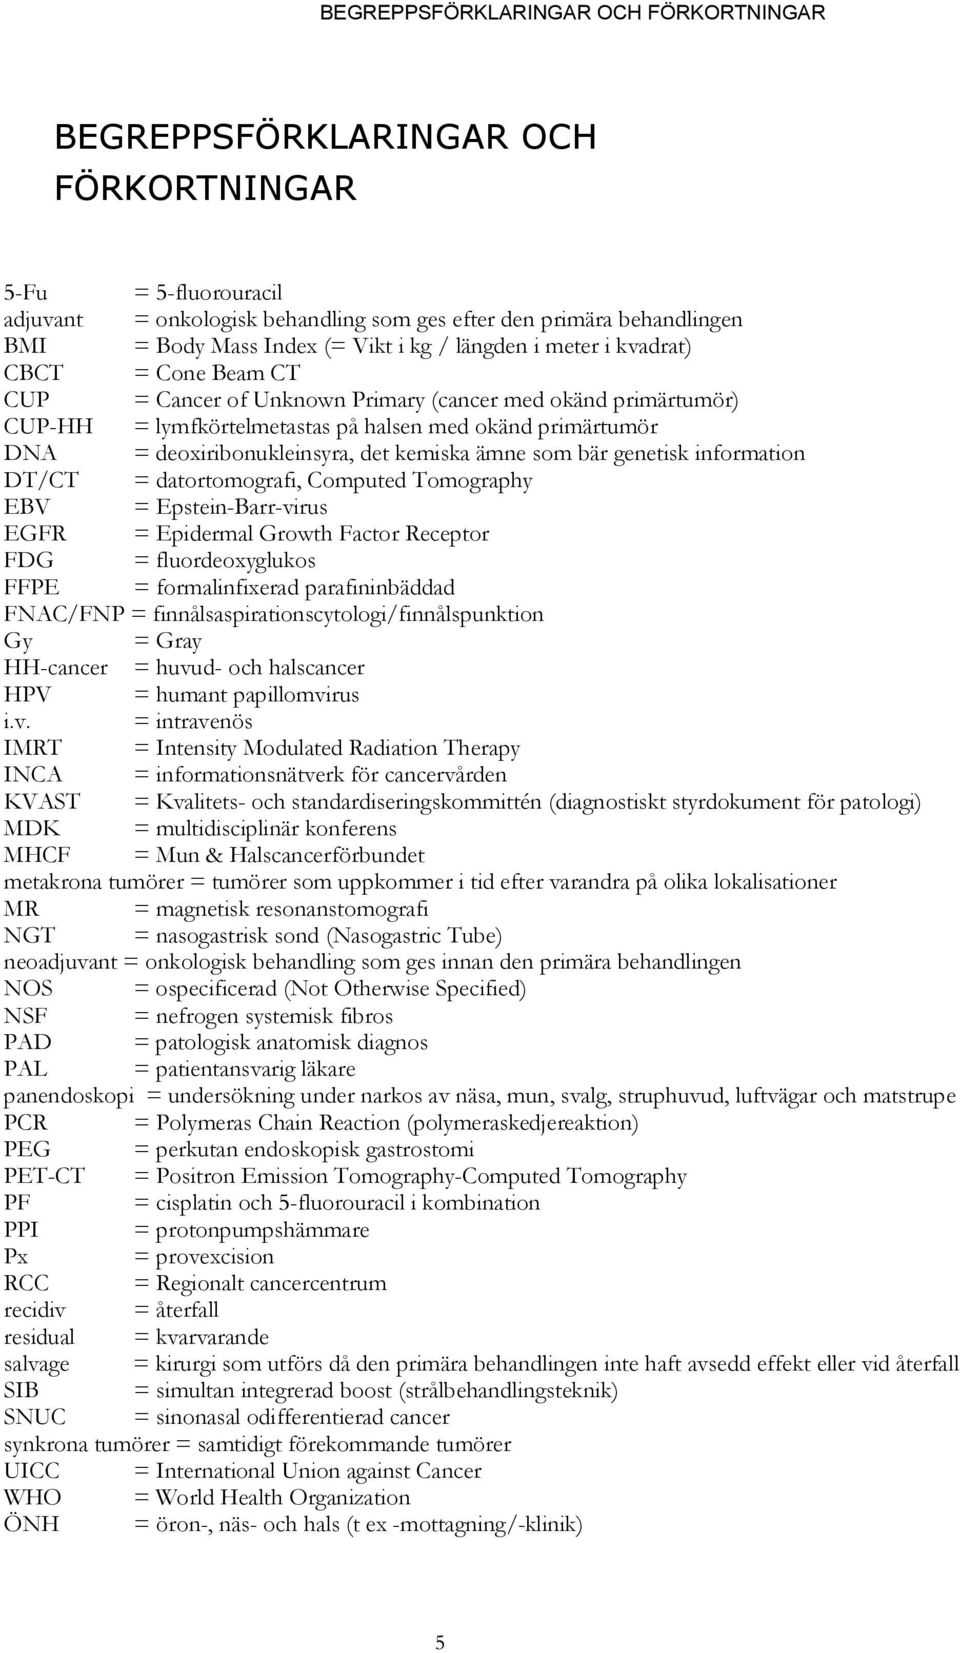 deoxiribonukleinsyra, det kemiska ämne som bär genetisk information DT/CT = datortomografi, Computed Tomography EBV = Epstein-Barr-virus EGFR = Epidermal Growth Factor Receptor FDG = fluordeoxyglukos